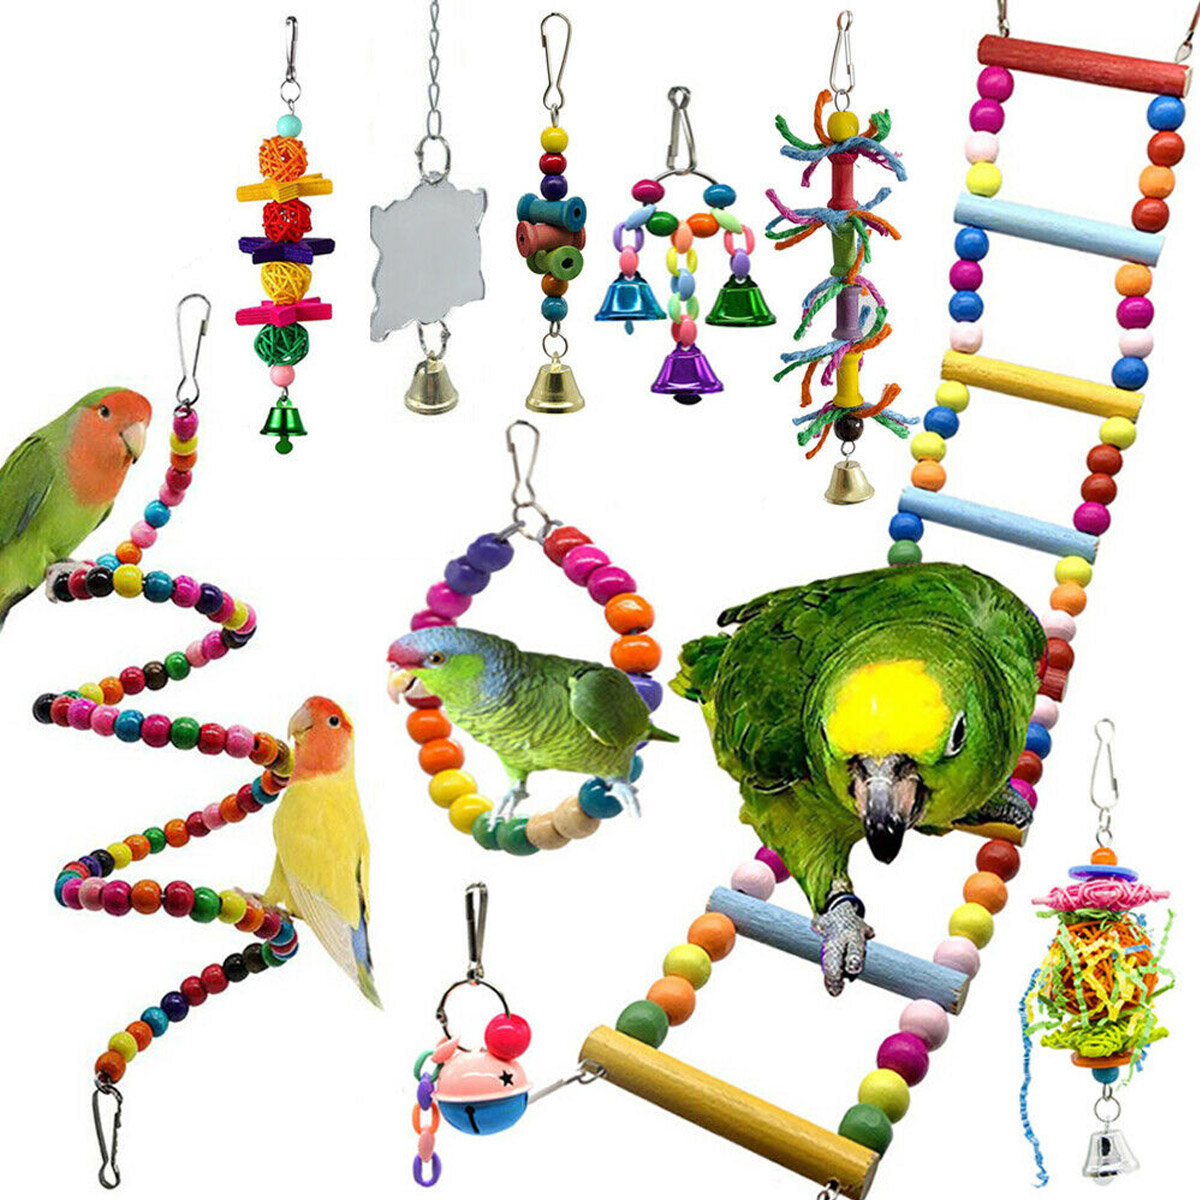 

10 шт. Попугай подвесные качели игрушка для птиц привязь клетка лестница попугай Корелла волнистый попугайчик товары для